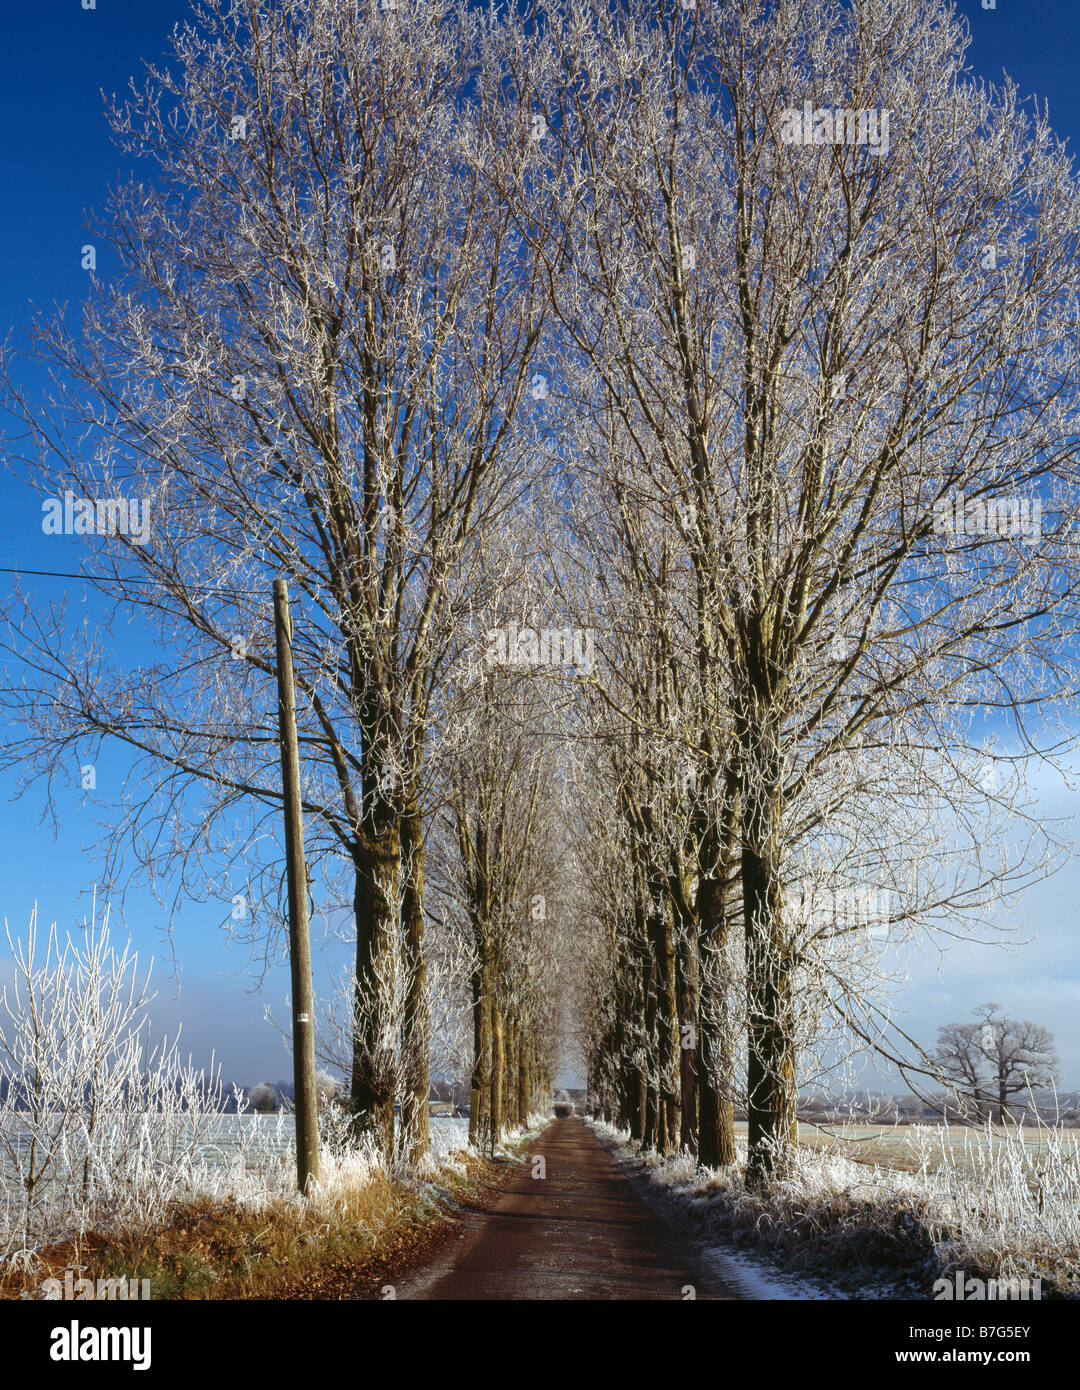 Avenue d'arbres couverte de gel Haw. Skid Hill Farm, Biggin Hill, Kent, Angleterre, Royaume-Uni. Banque D'Images